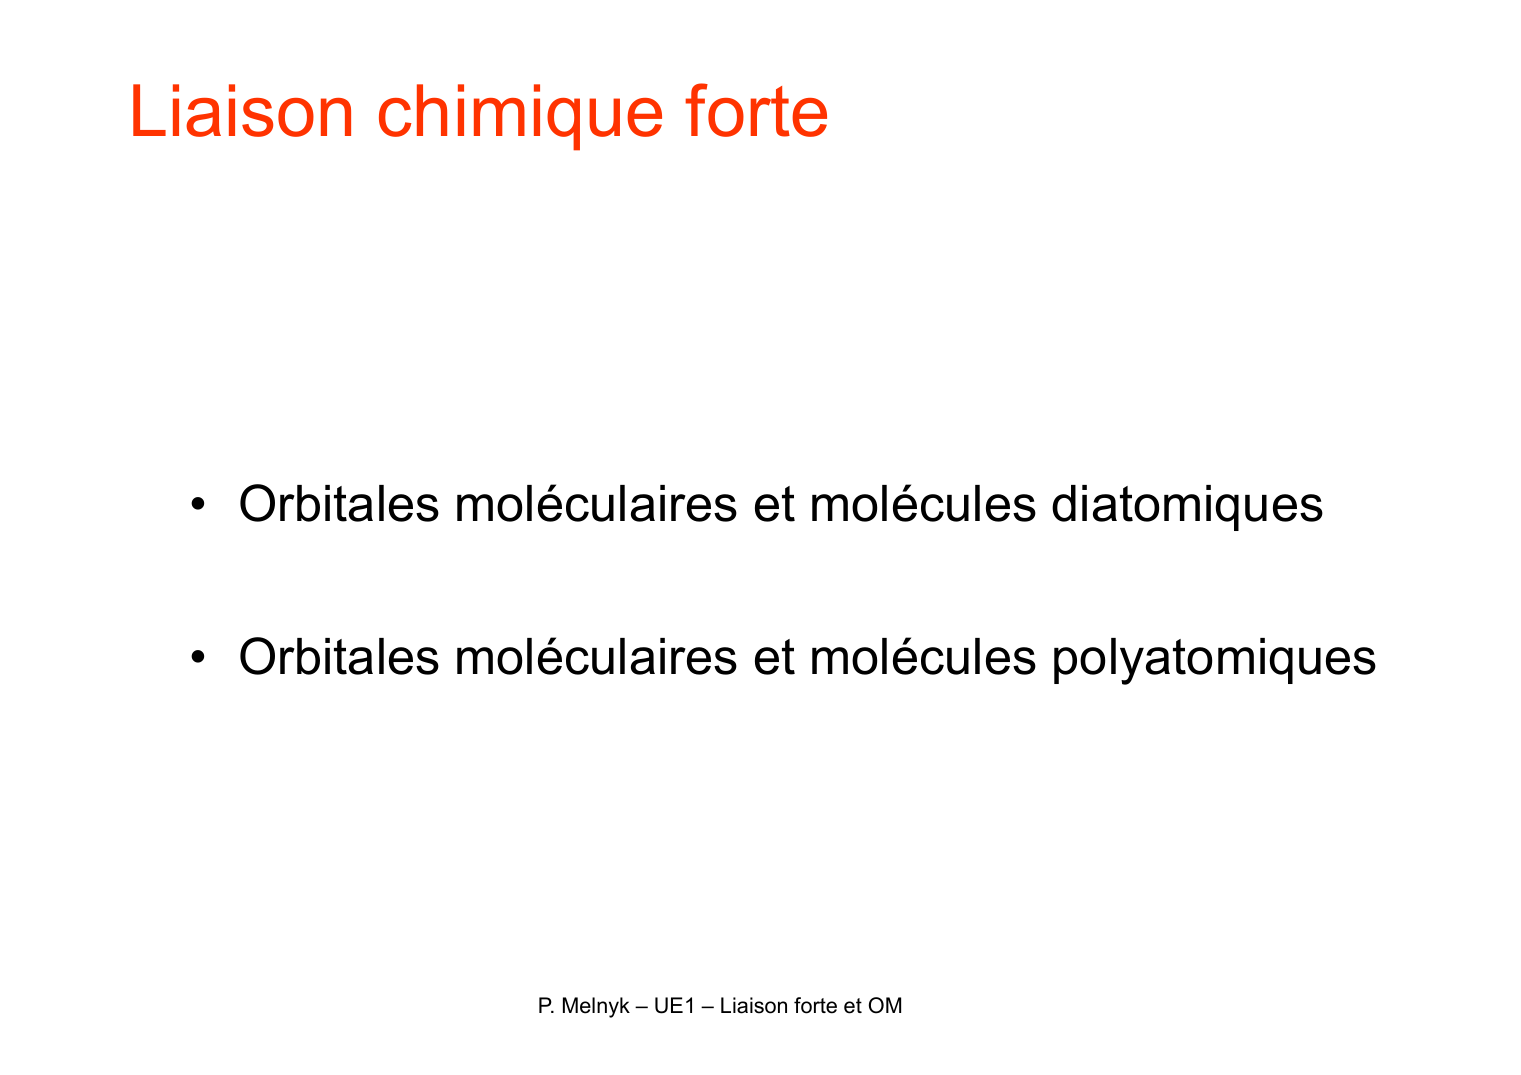 Prévisualisation du document Liaison chimique forteo Orbitales moléculaires et molécules diatomiqueso Orbitales moléculaires et molécules polyatomiquesP.